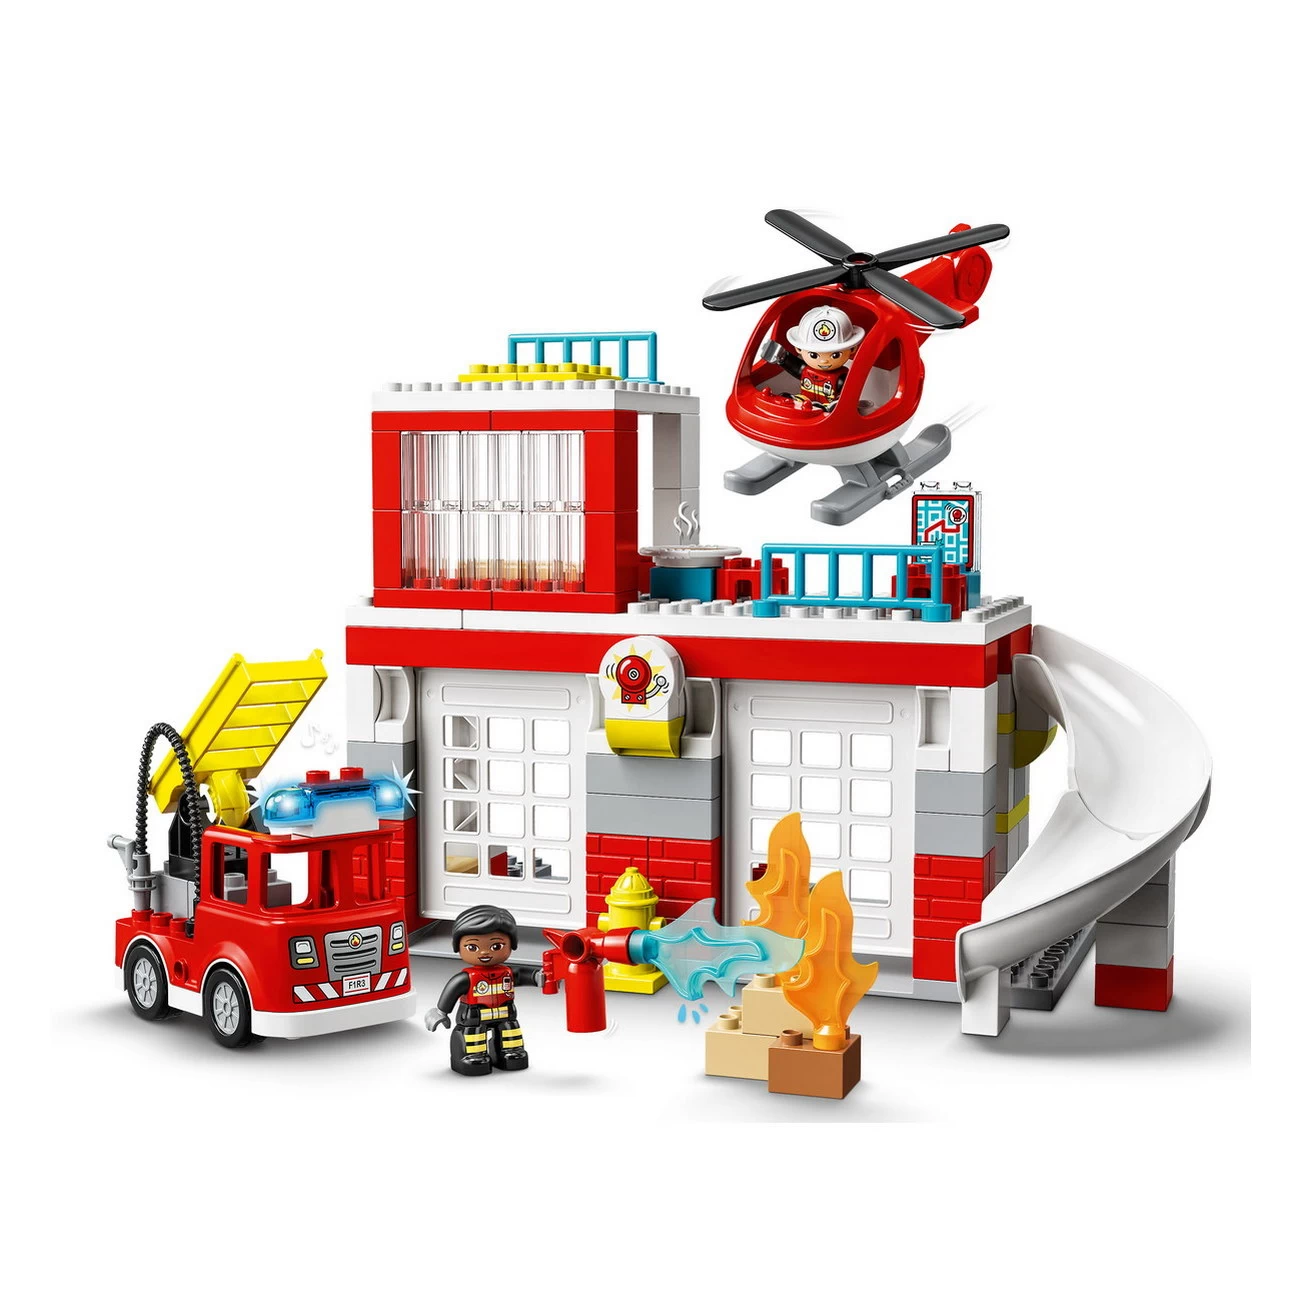 LEGO DUPLO 10970 - Feuerwehrwache mit Hubschrauber